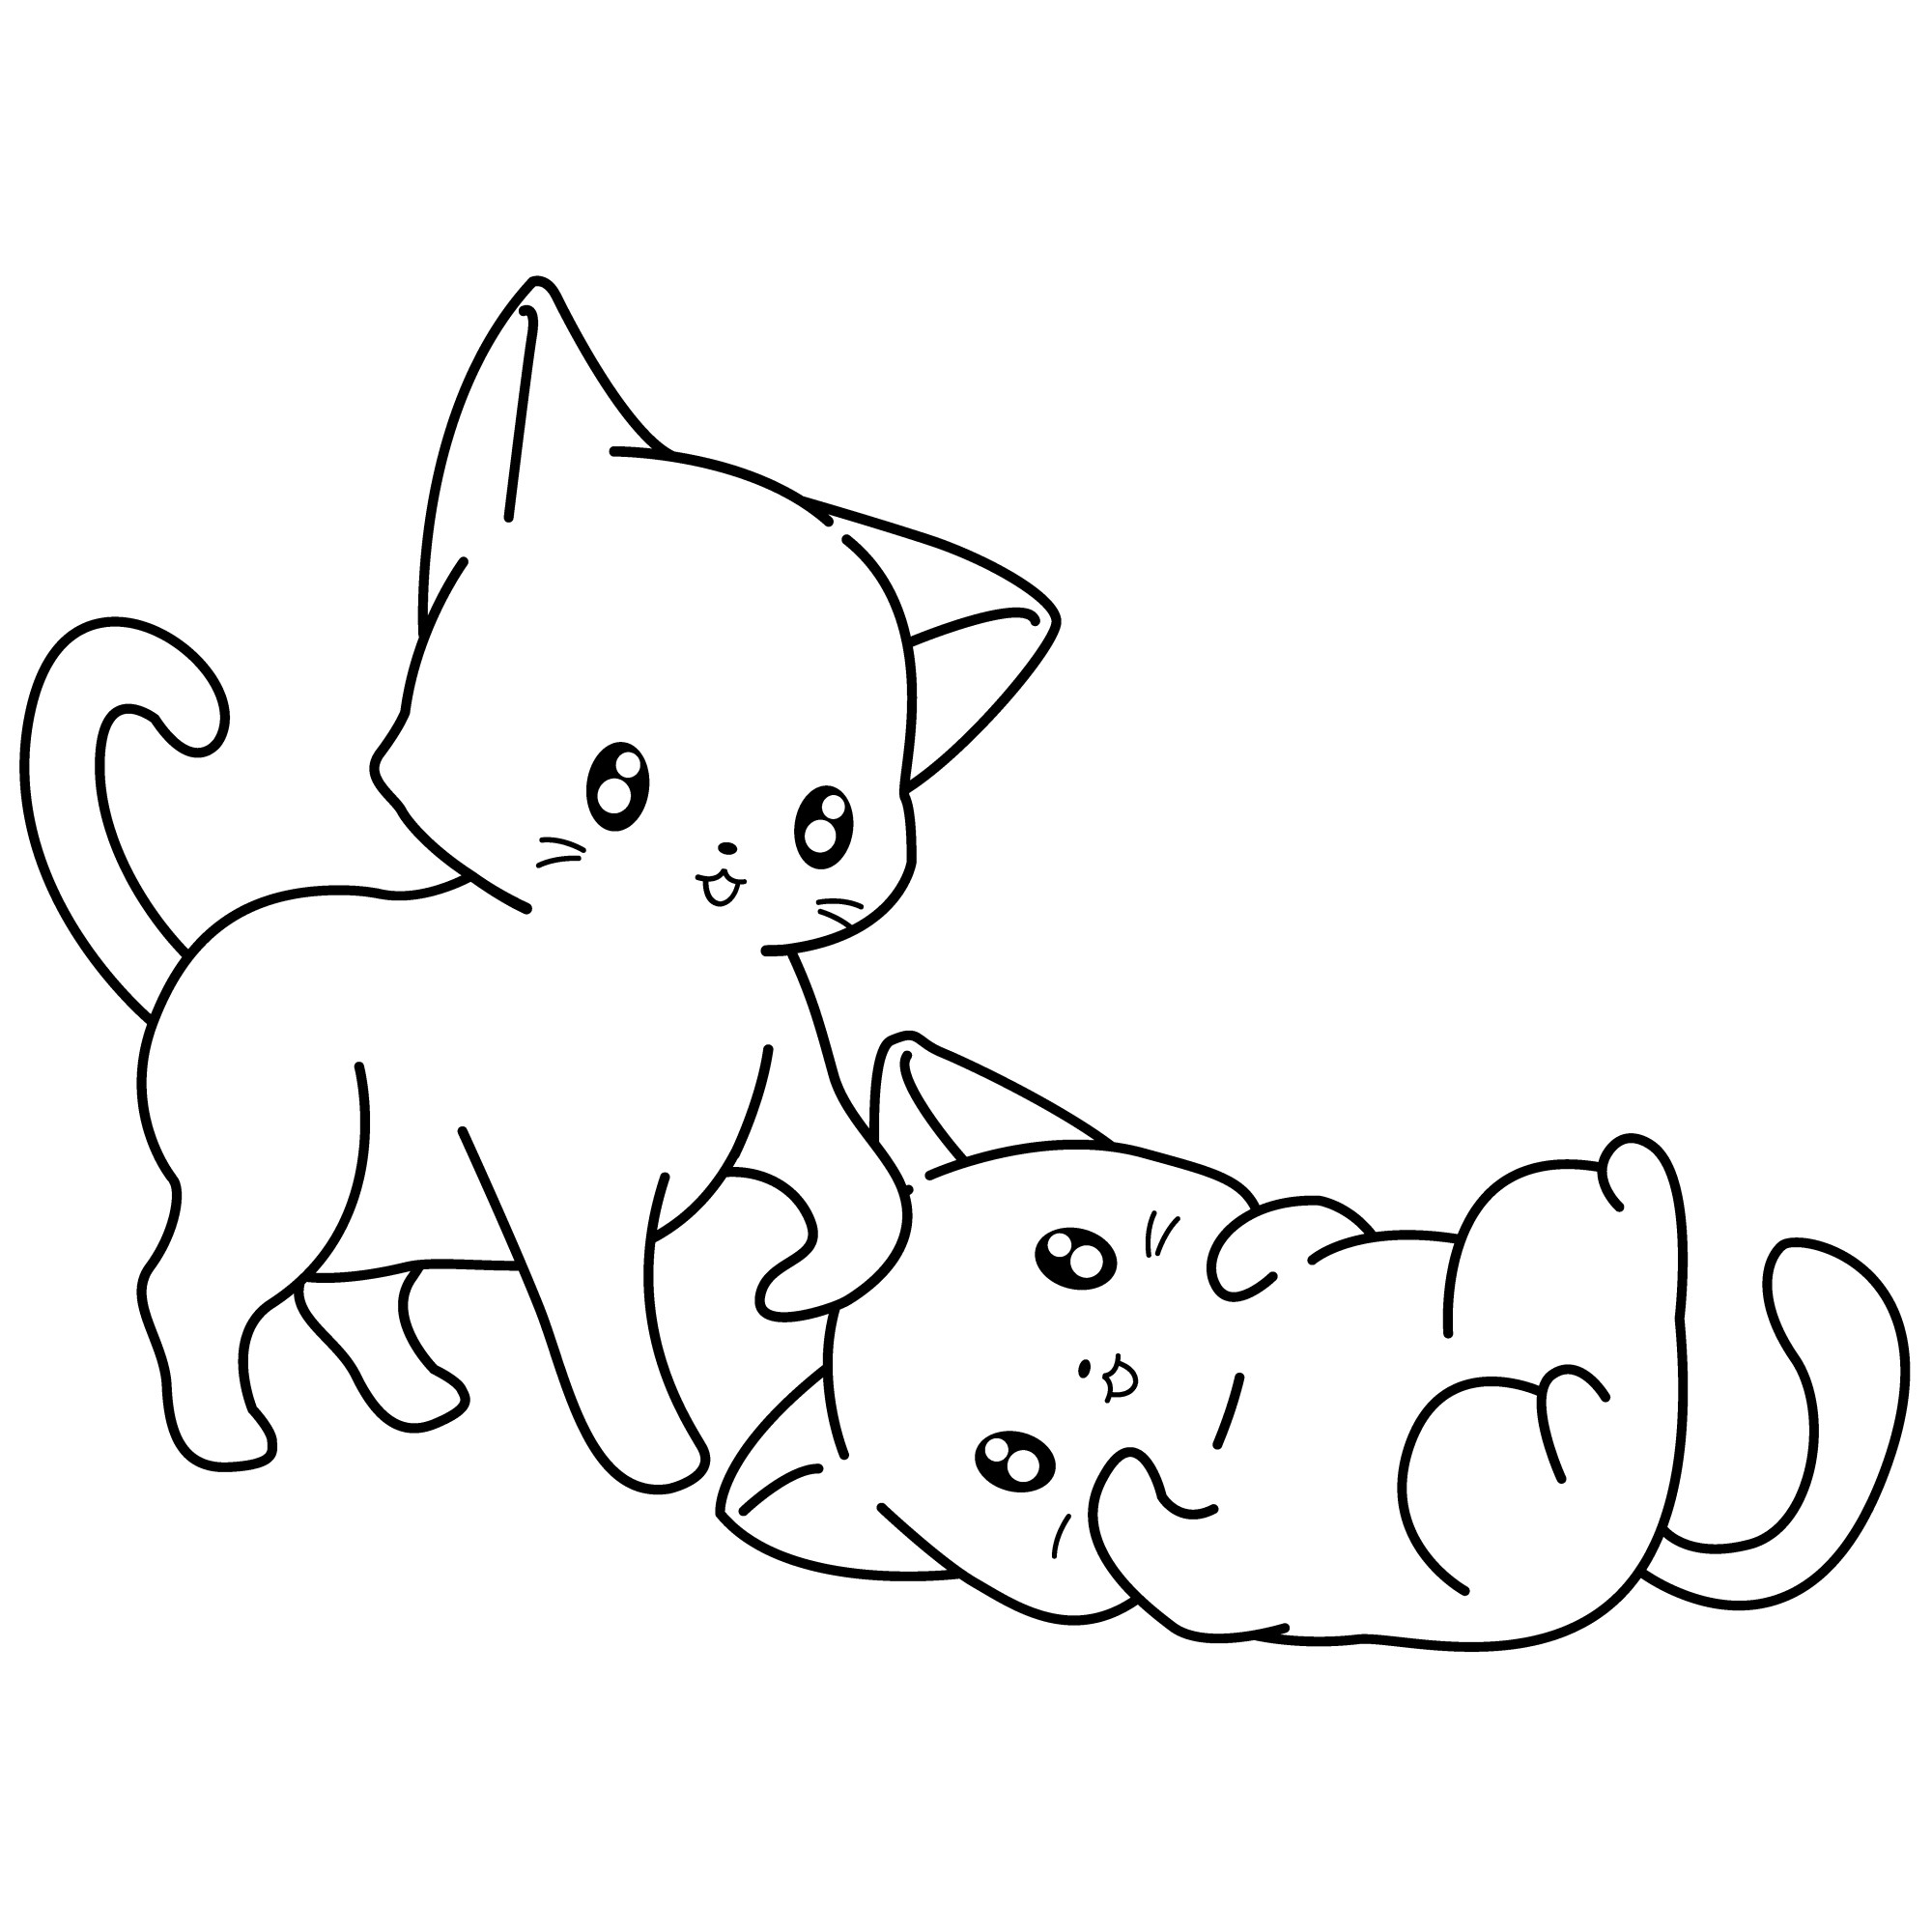 Раскраска для детей: милые котята играют